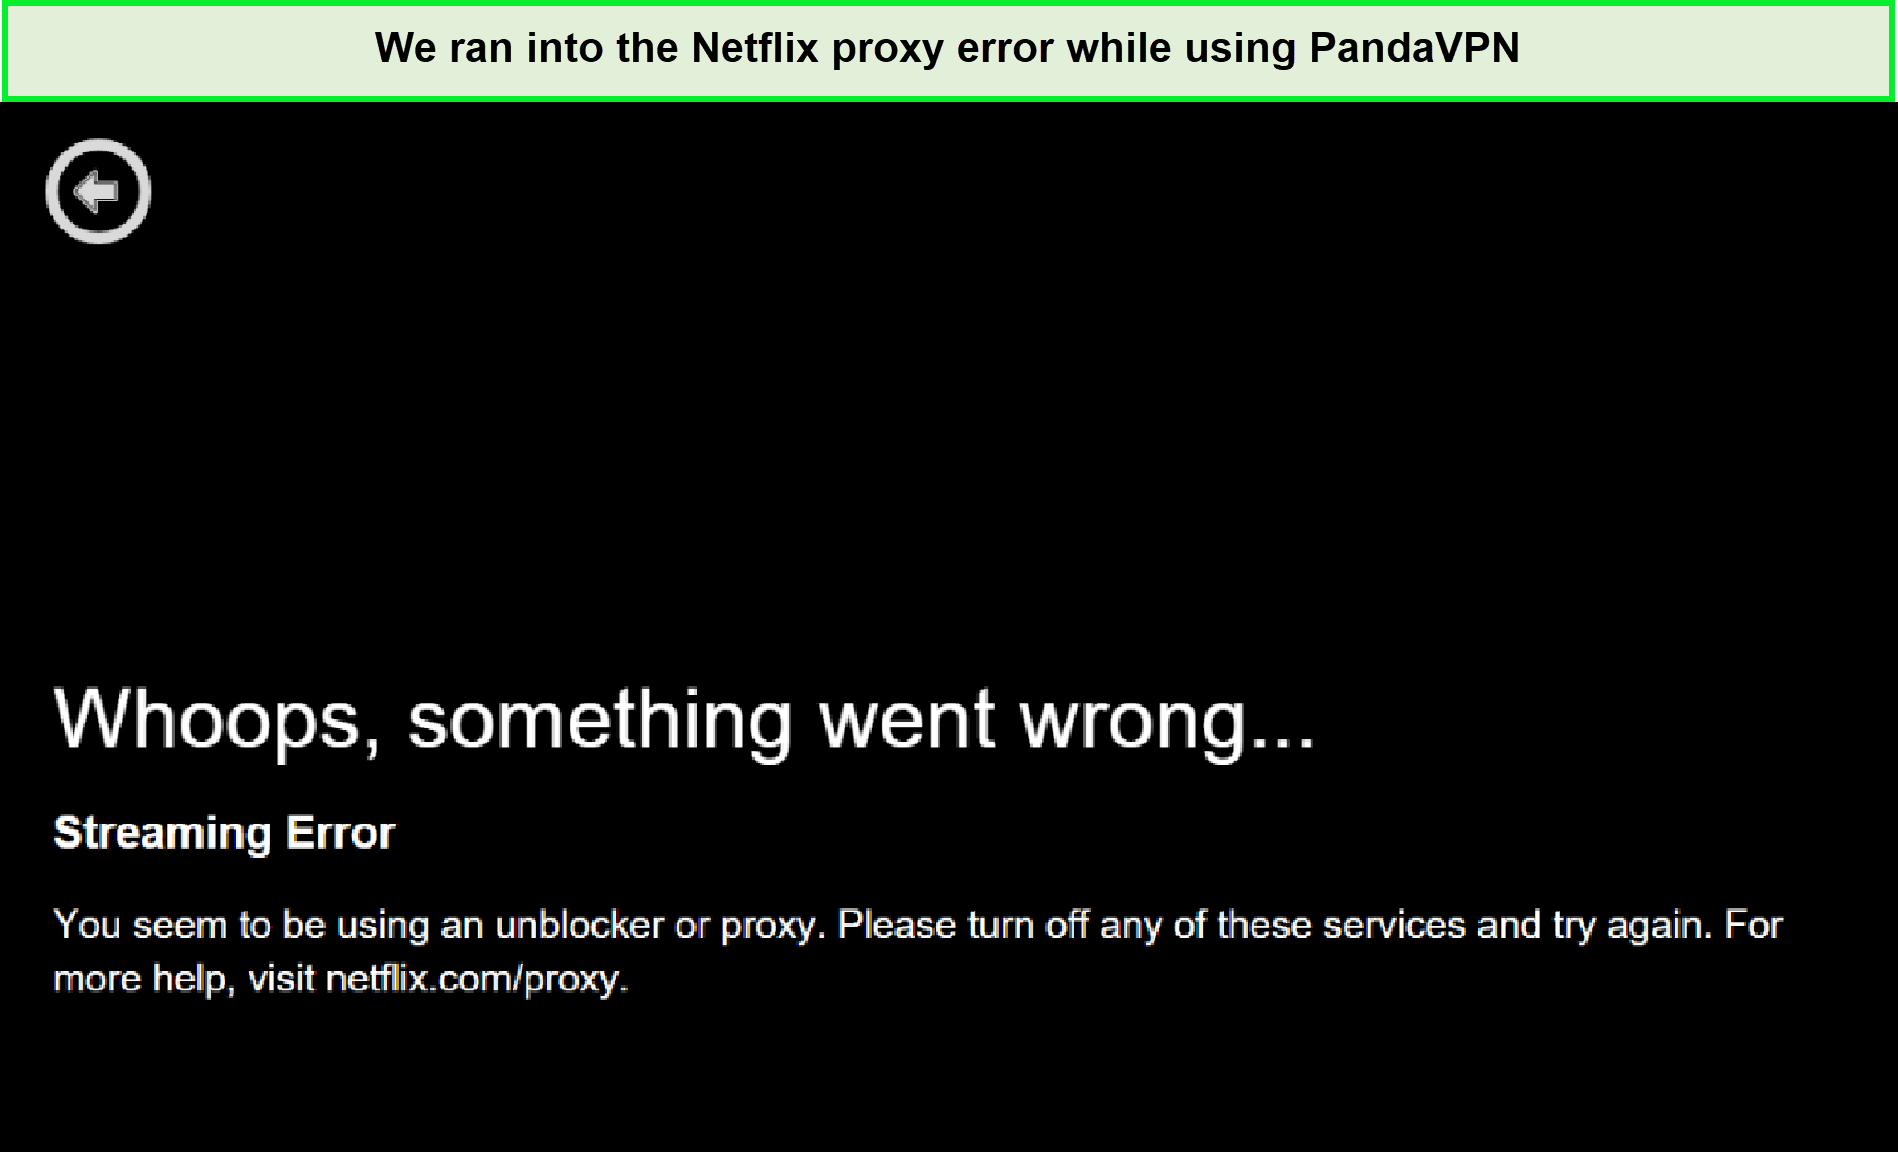 pandavpn-netflix-proxy-error